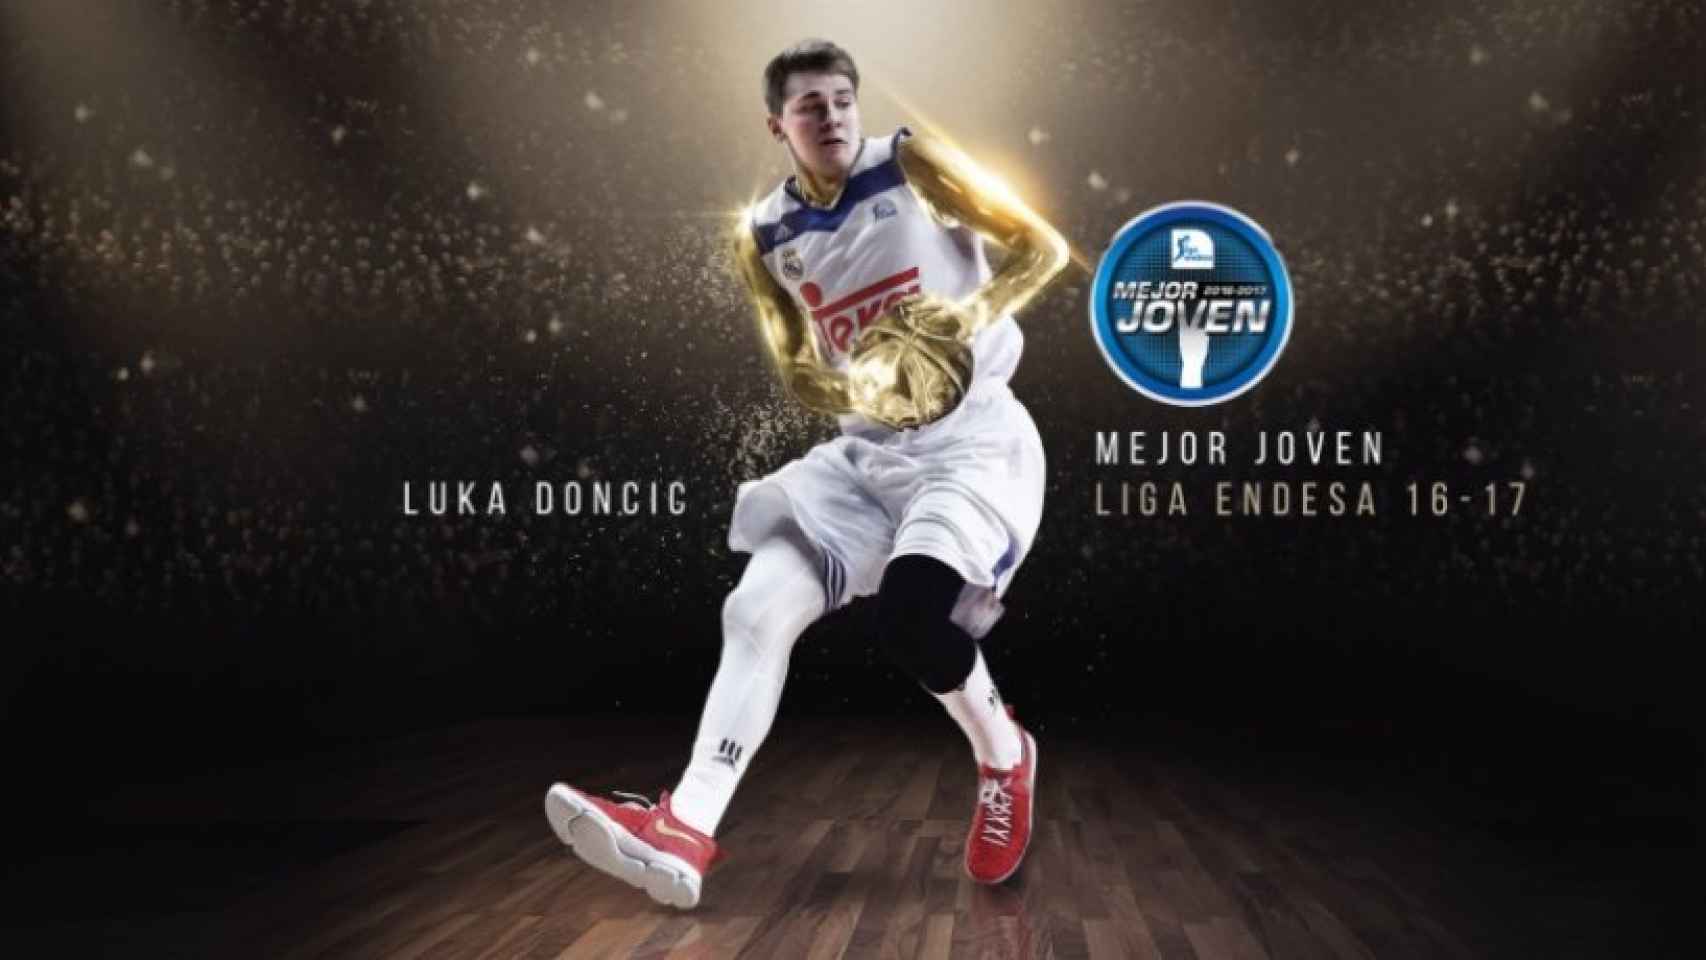 Luka Doncic, mejor jugador joven de ACB. Fuente: @acbcom